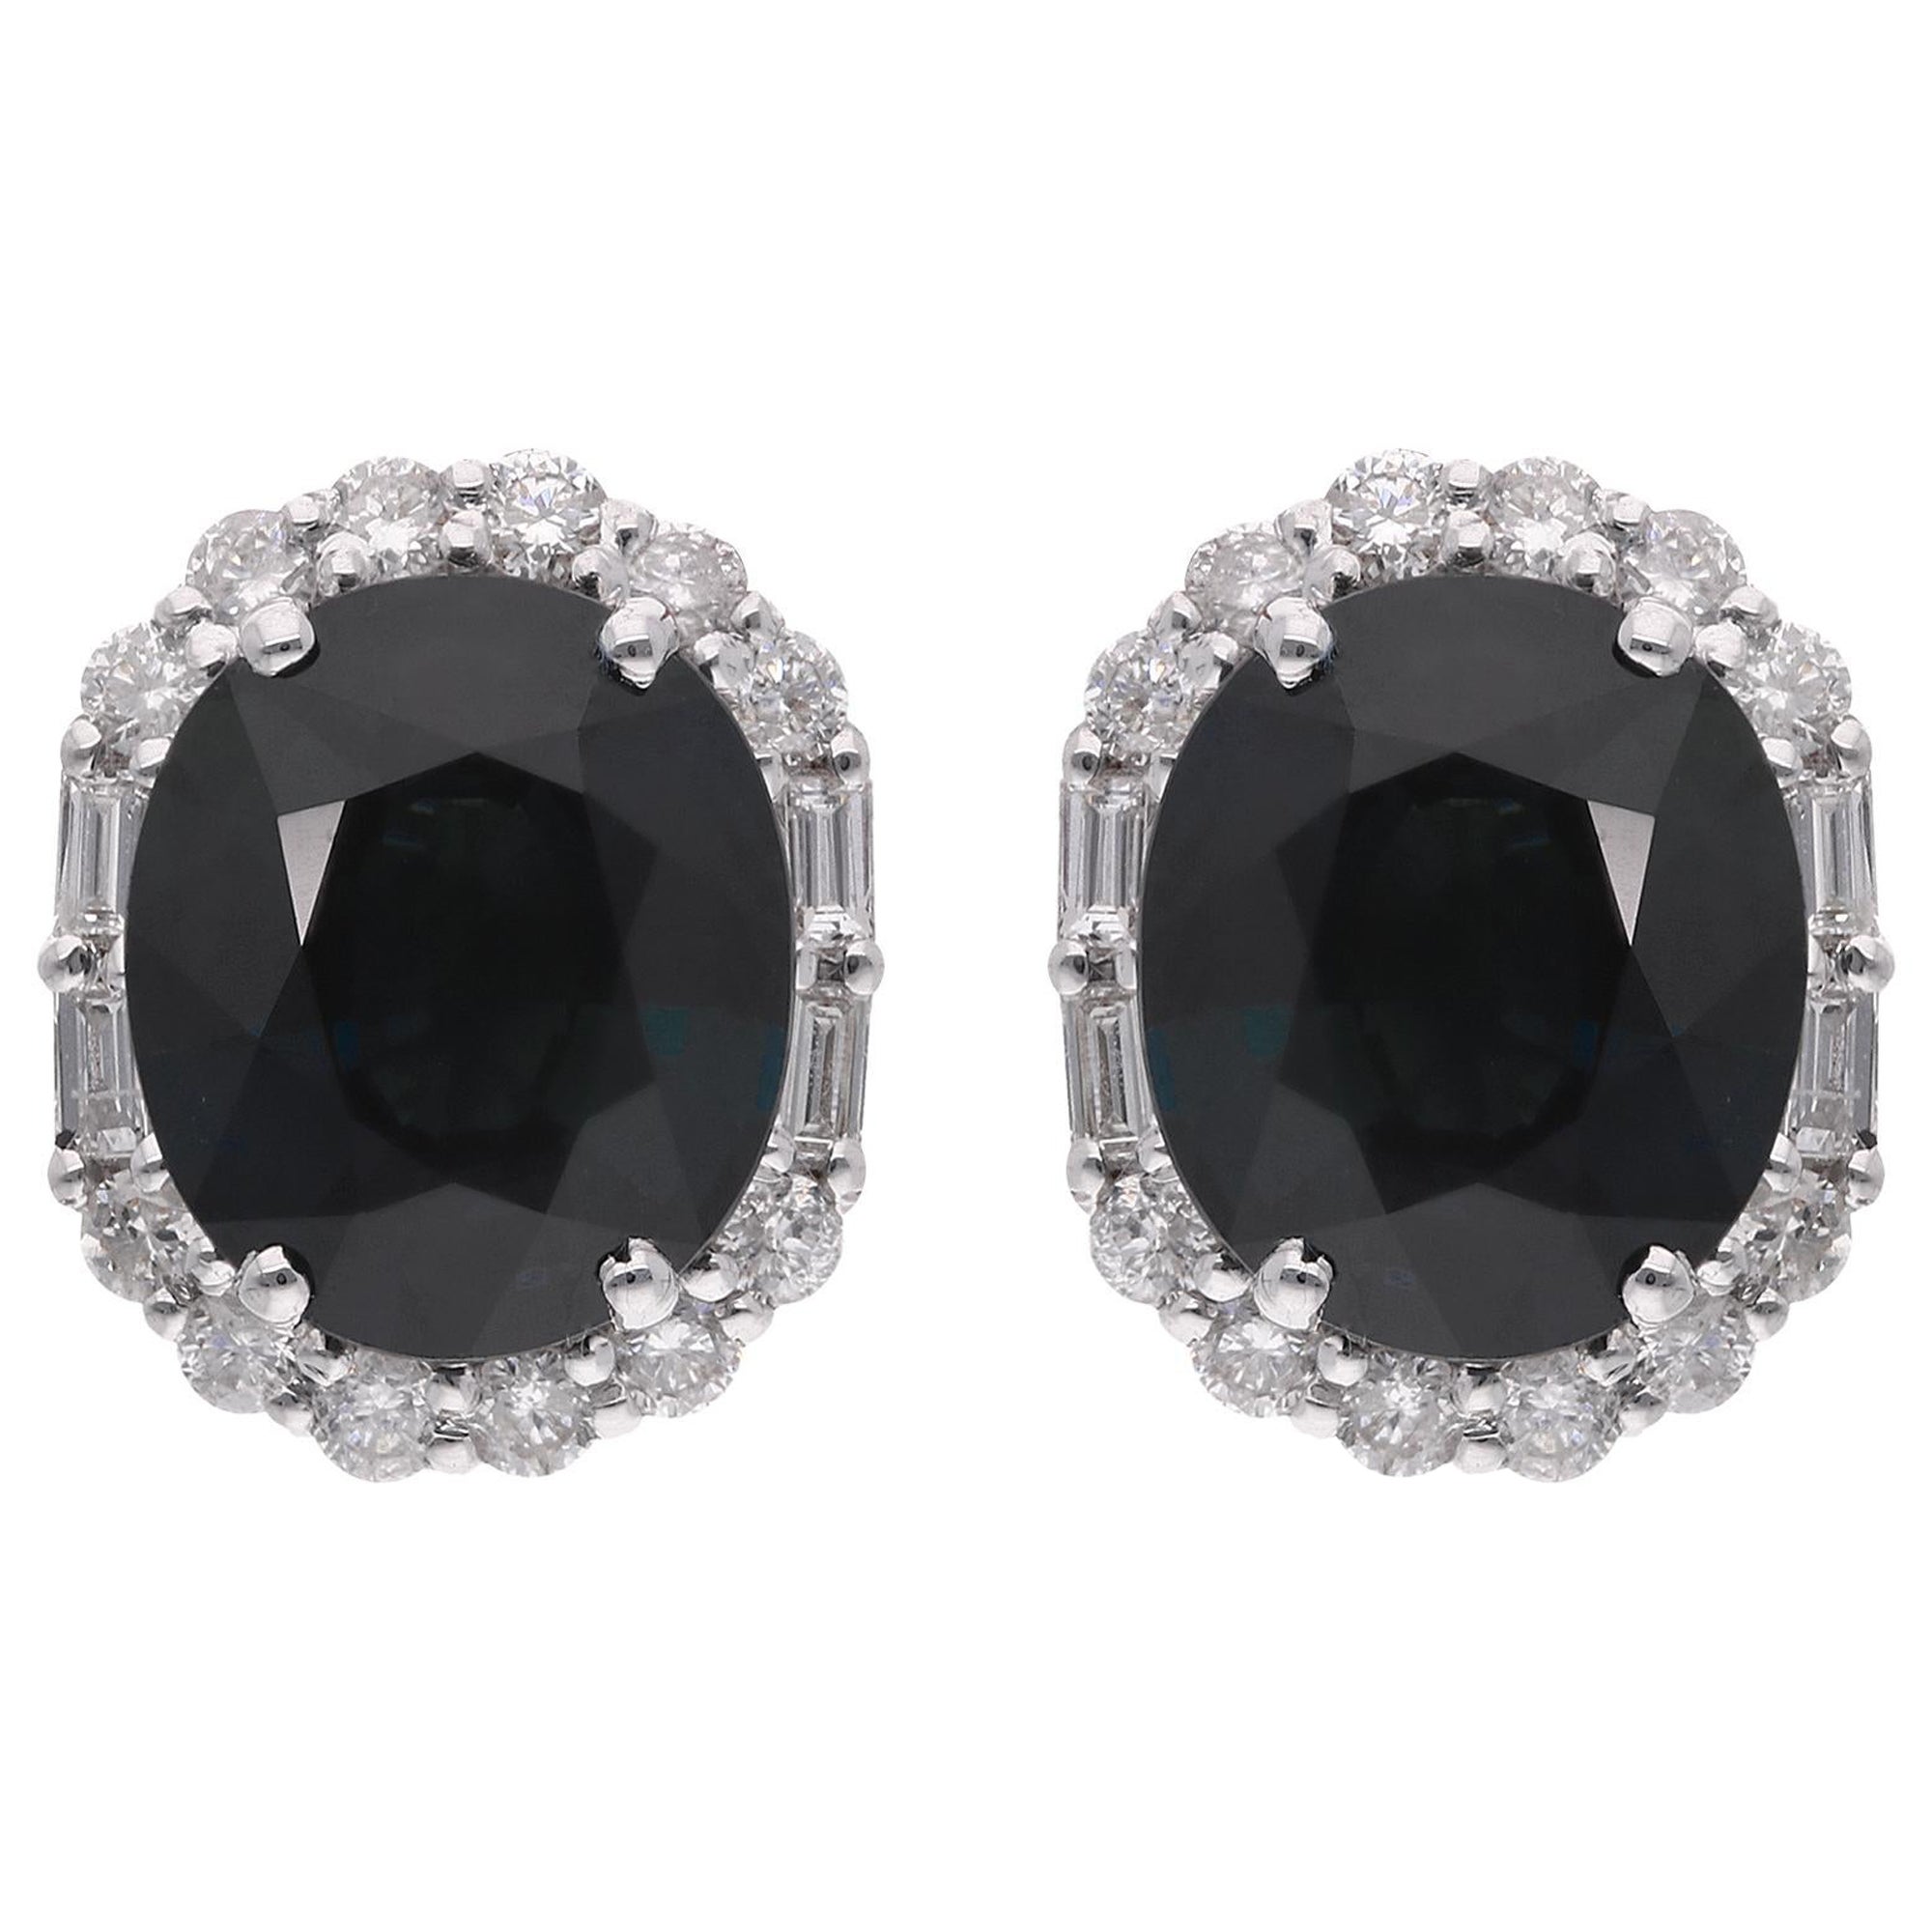 Blue Sapphire Gemstone Stud Earrings Baguette Diamond 18 Kt White Gold Jewelry